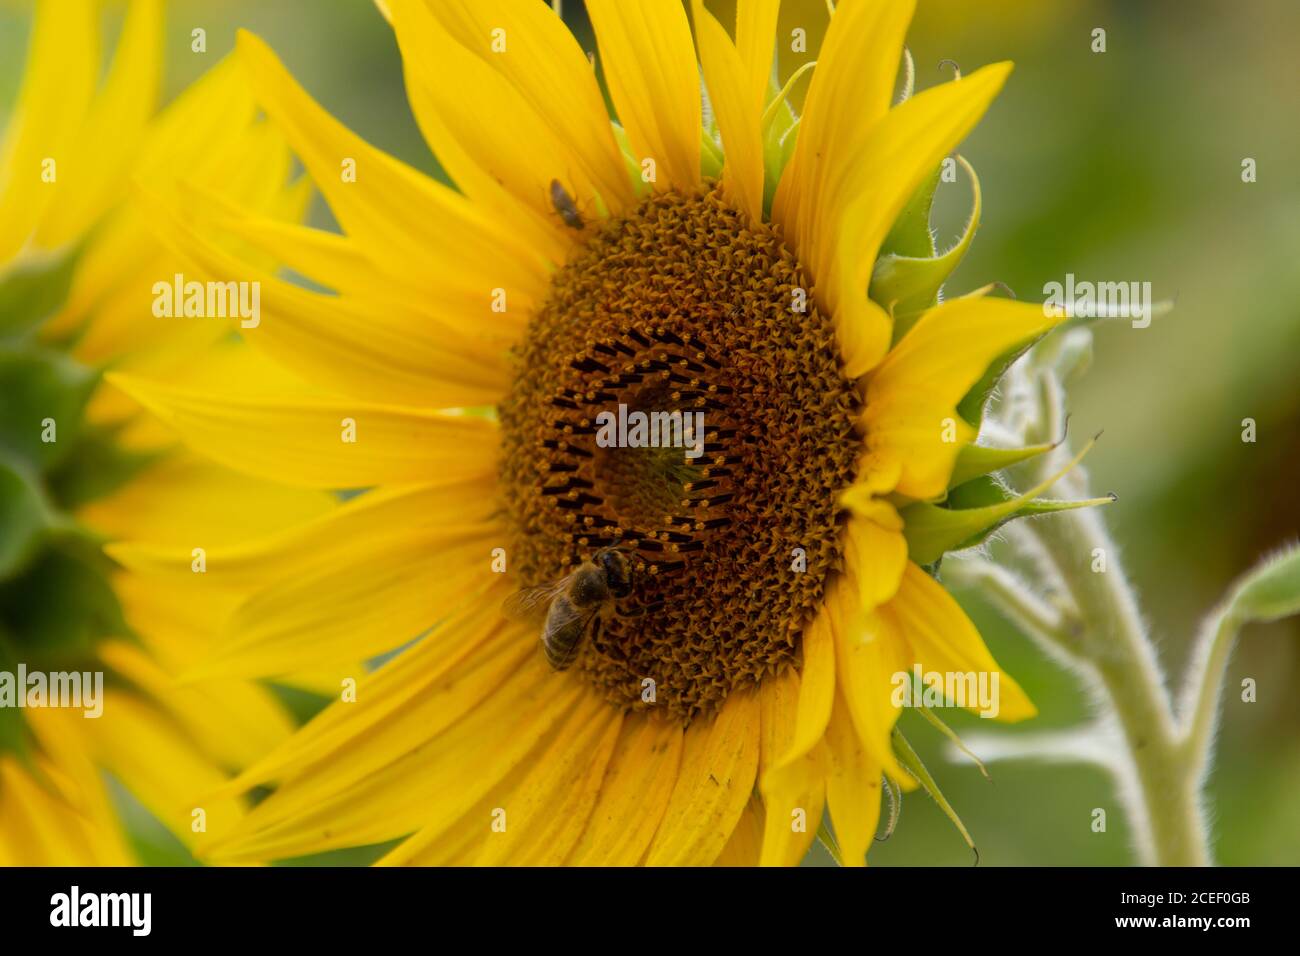 Cerca de la abeja recolectando néctar en un girasol Foto de stock